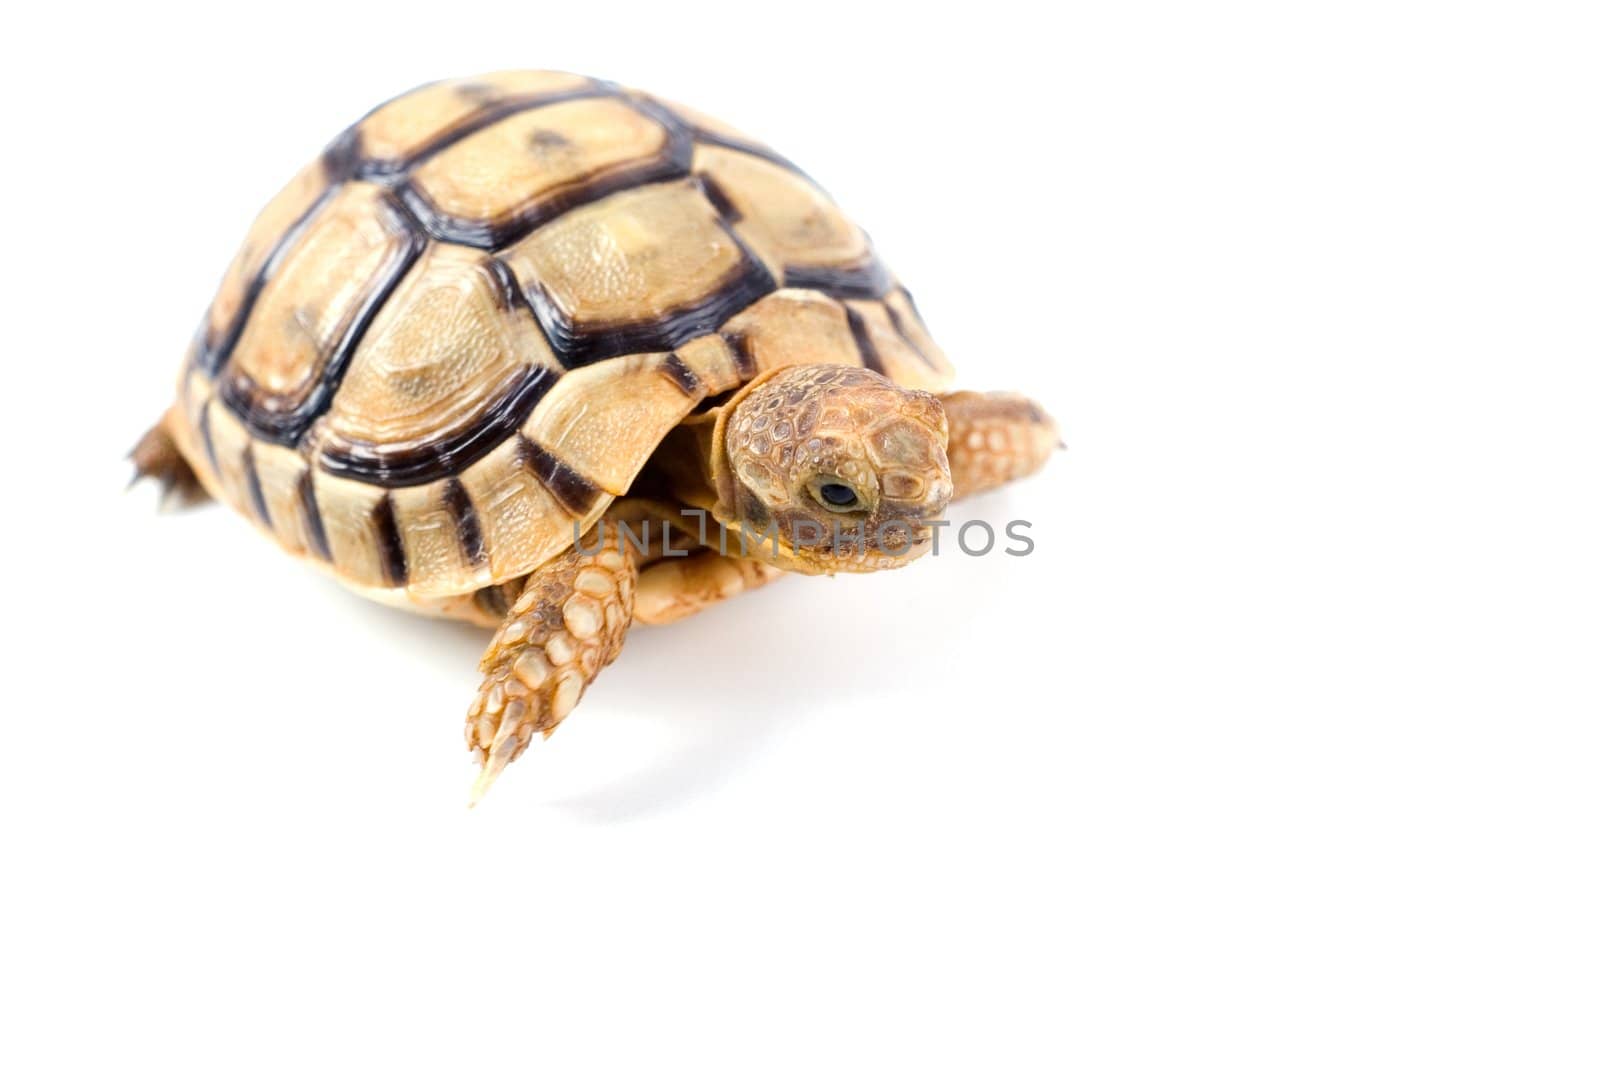 Little tortoise by Vladimir